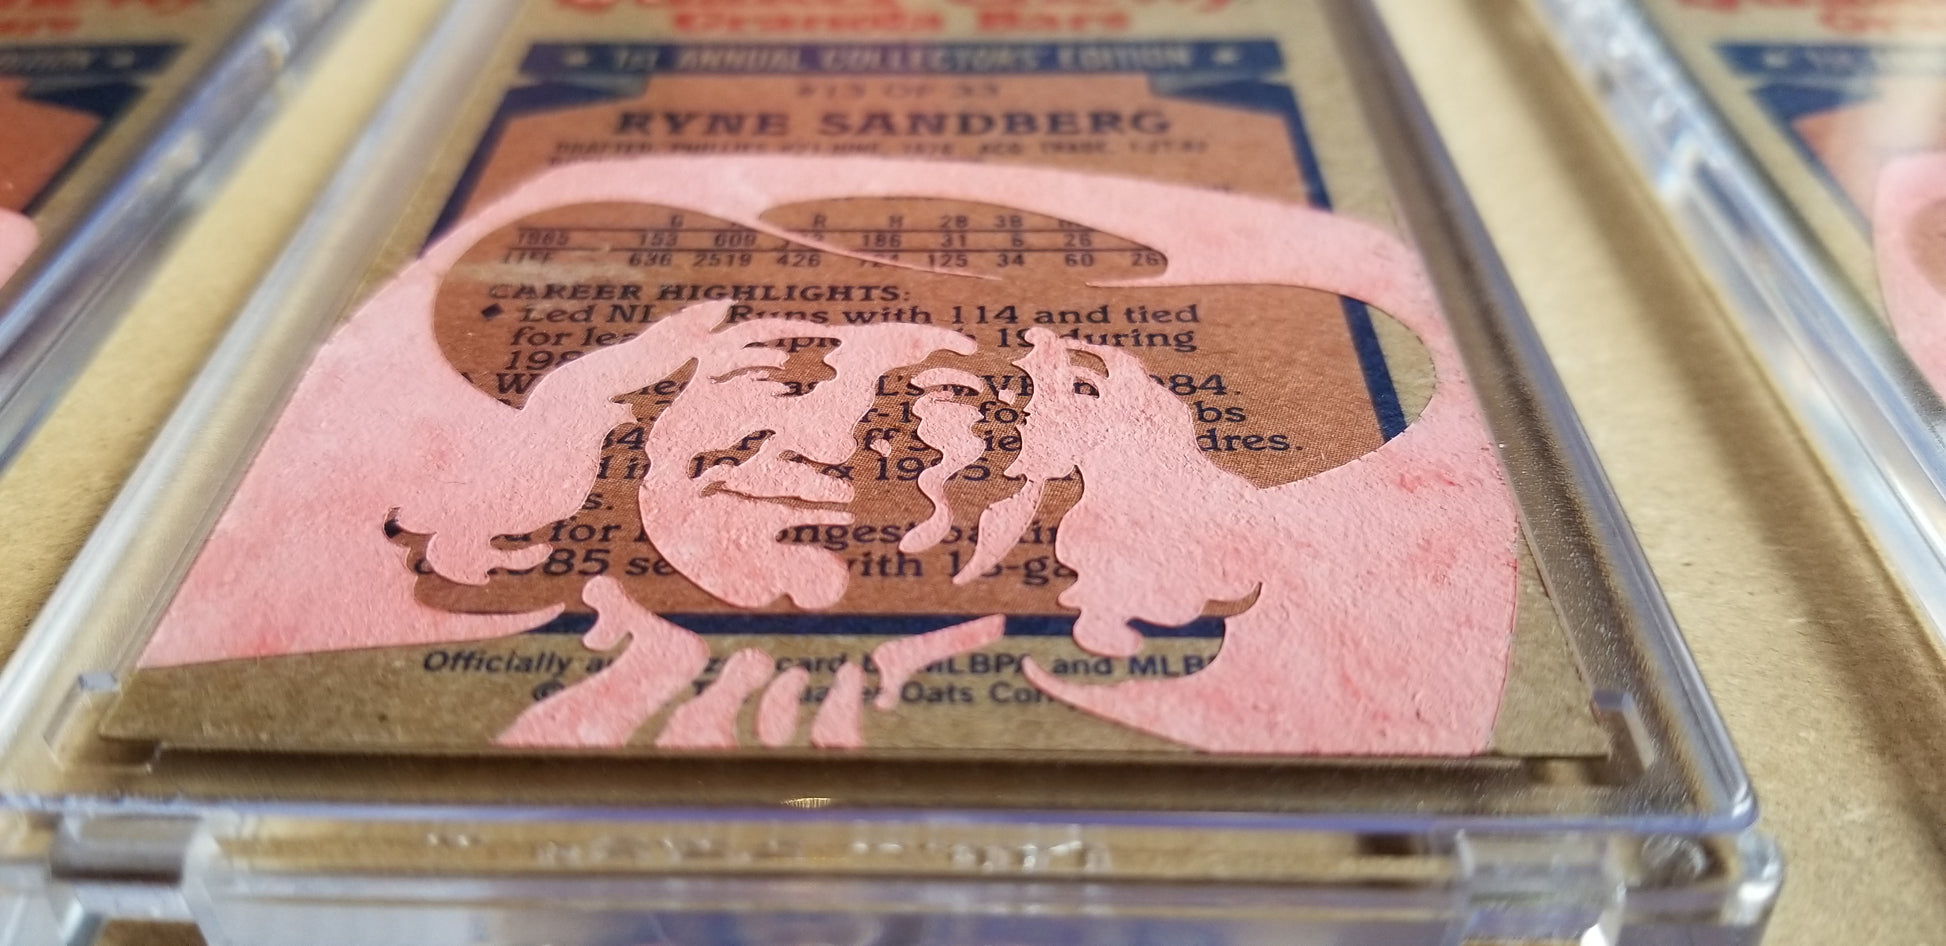 Baseball card art by Matthew Lee Rosen (aka Matthew Rosen) - Gum Stick Collector Cards - 1986 Topps Quaker Chewy